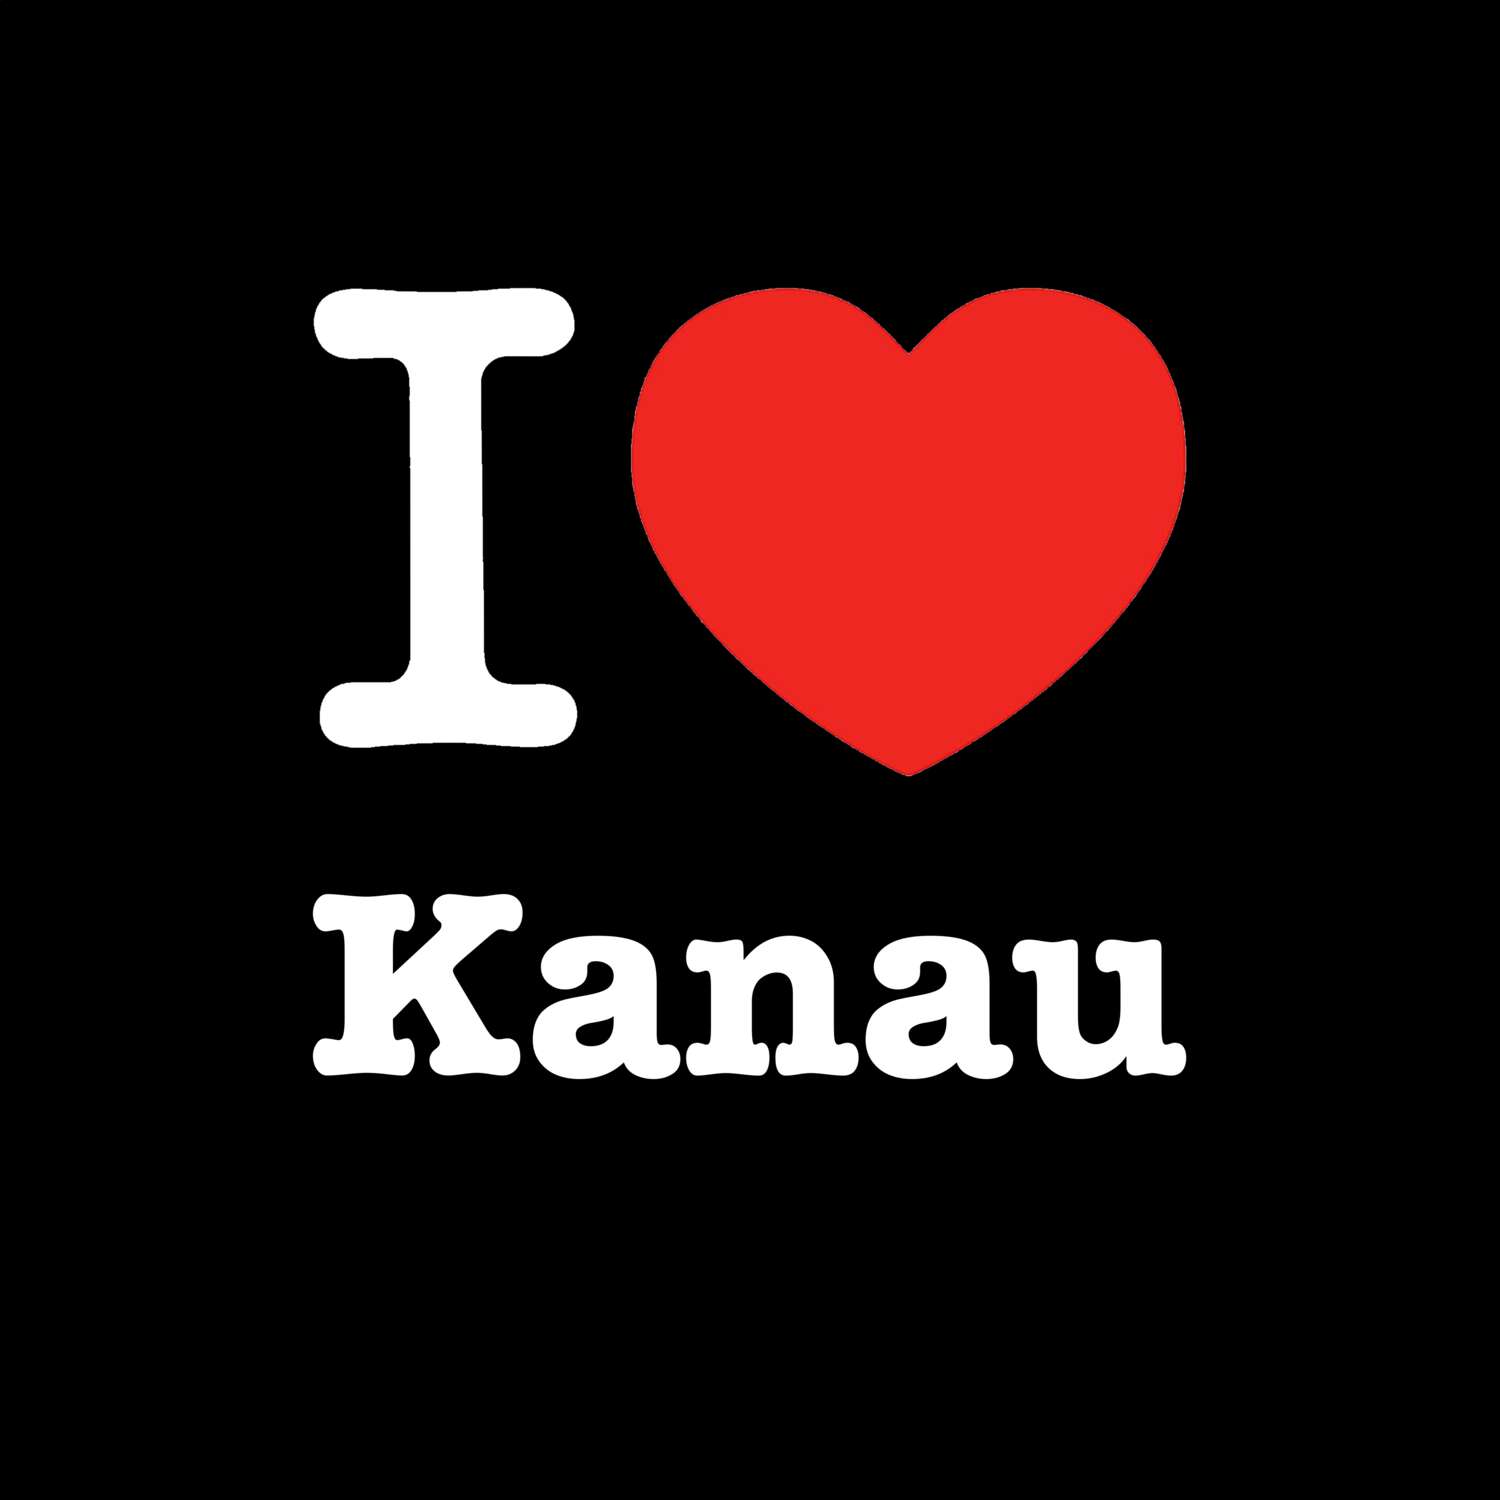 Kanau T-Shirt »I love«